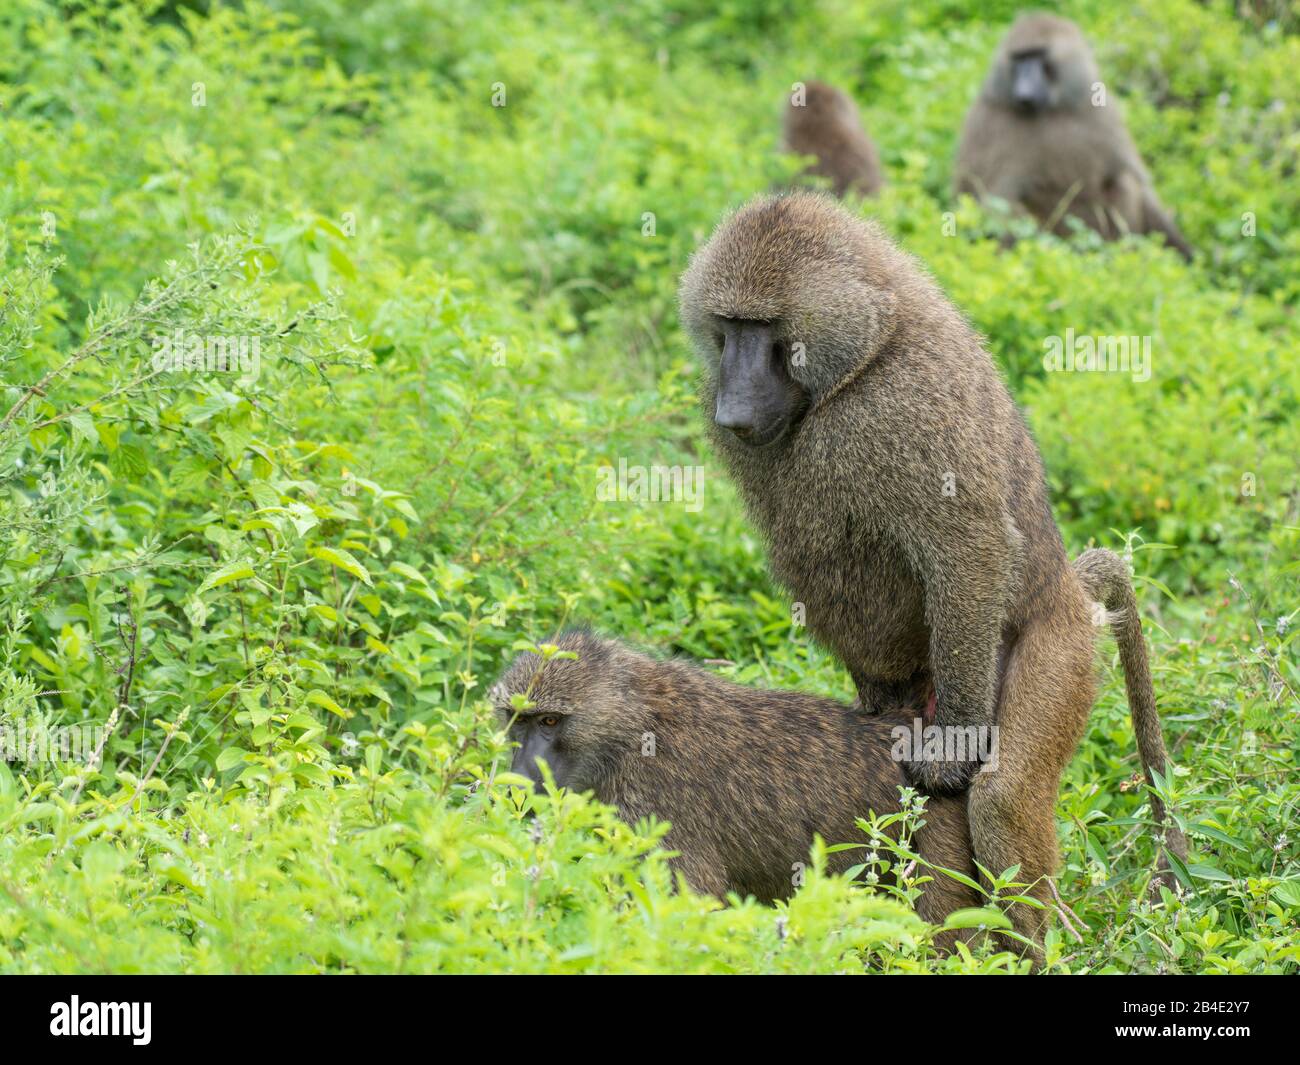 Arusha and lake manyara baboons at the mating hi-res stock photography and images